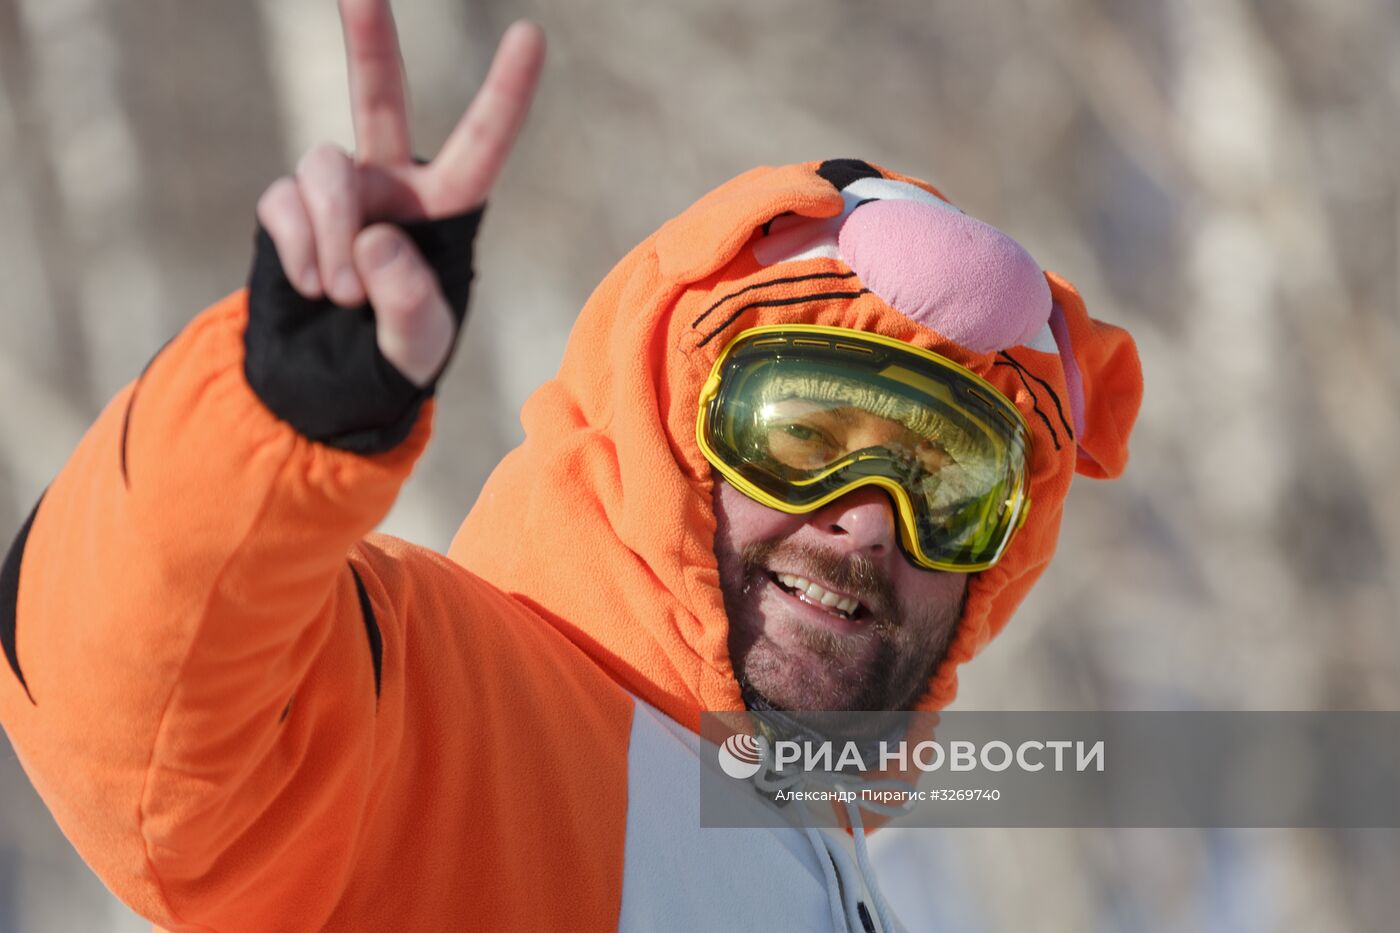 Массовый костюмированный спуск с горы Морозной на Камчатке